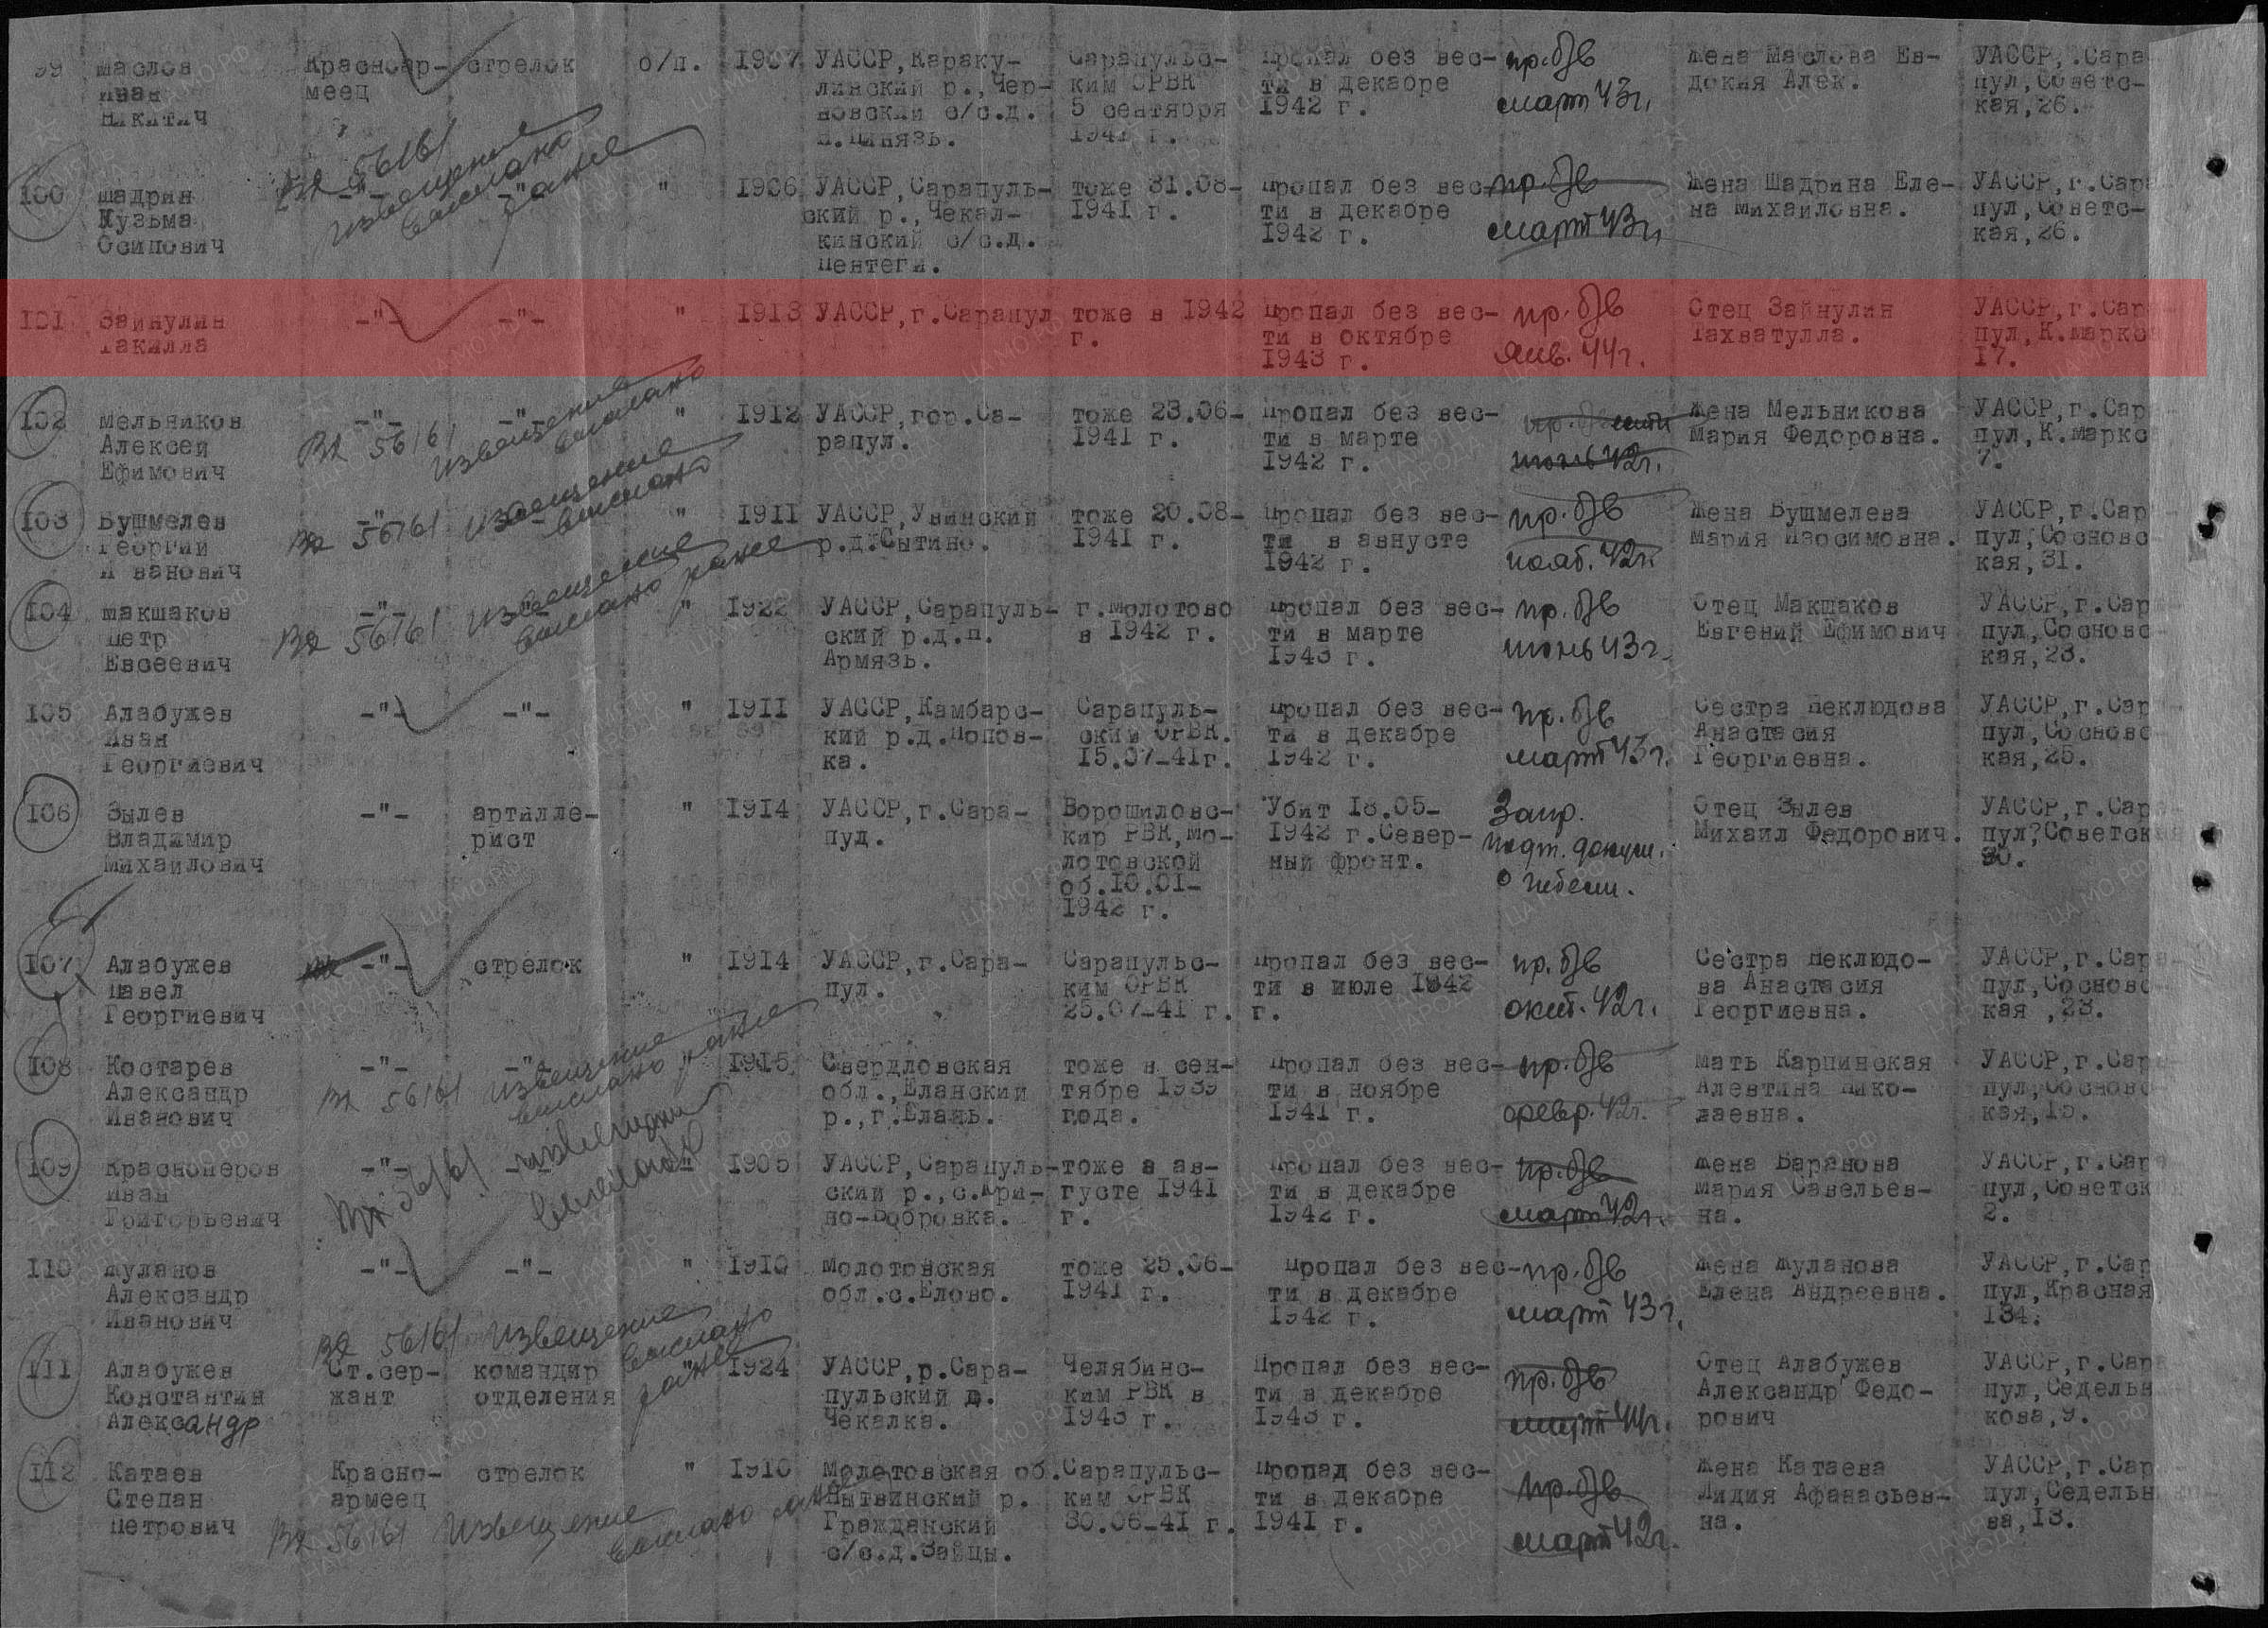 Лист донесения послевоенного периода, уточняющего потери, 26.06.1946